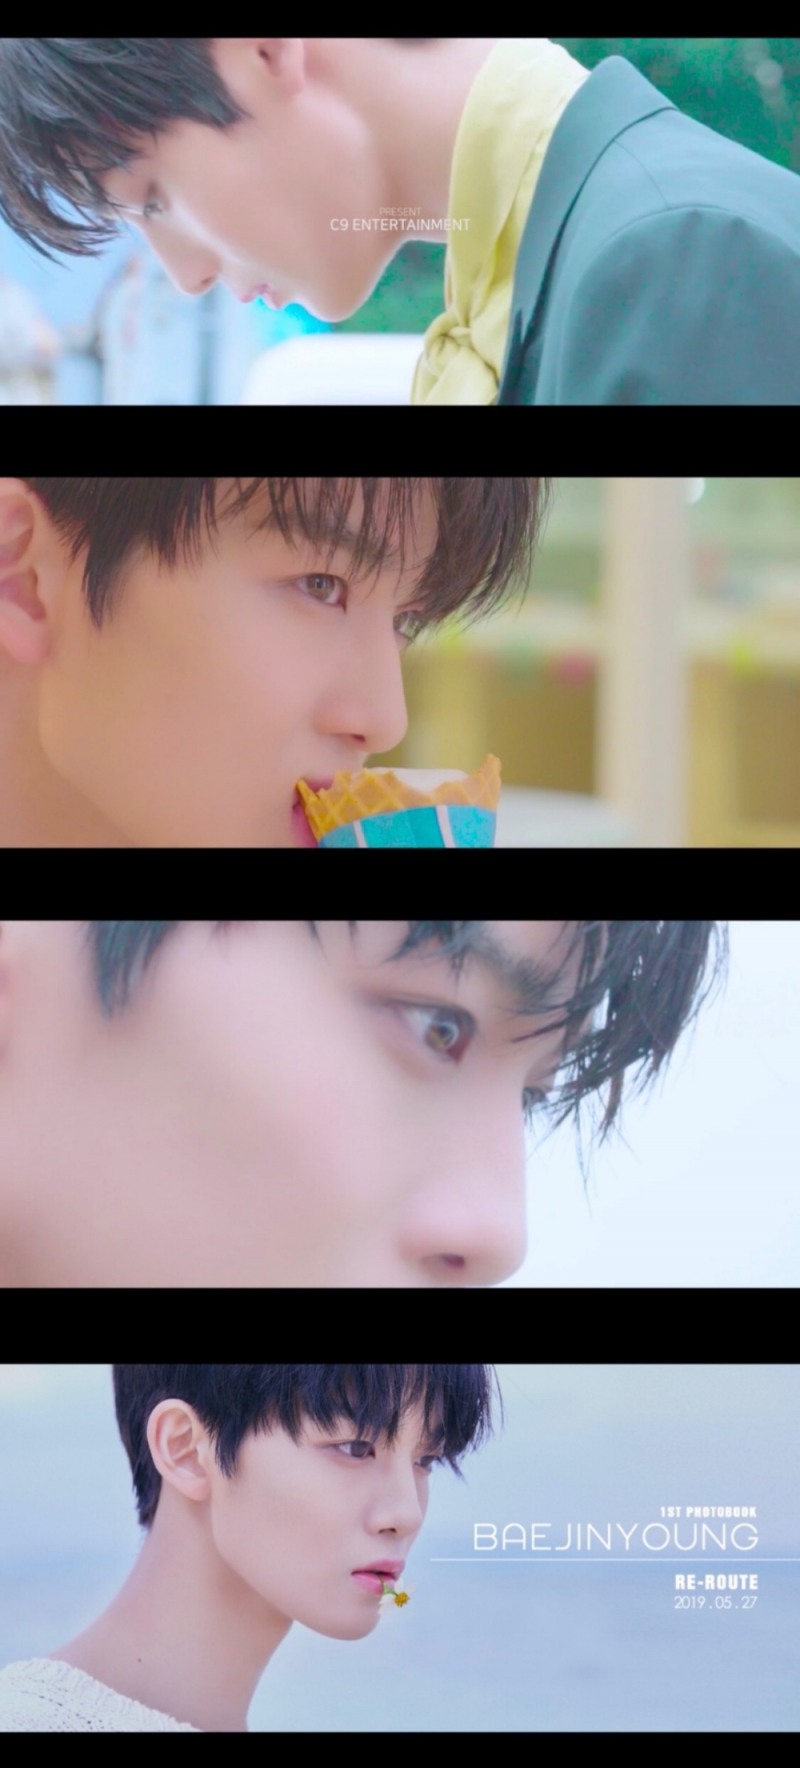 배진영, 화보집 ‘RE-ROUTE’ 발간 앞서 메이킹 티저 영상 오픈 ‘아이스크림 소년 등극’